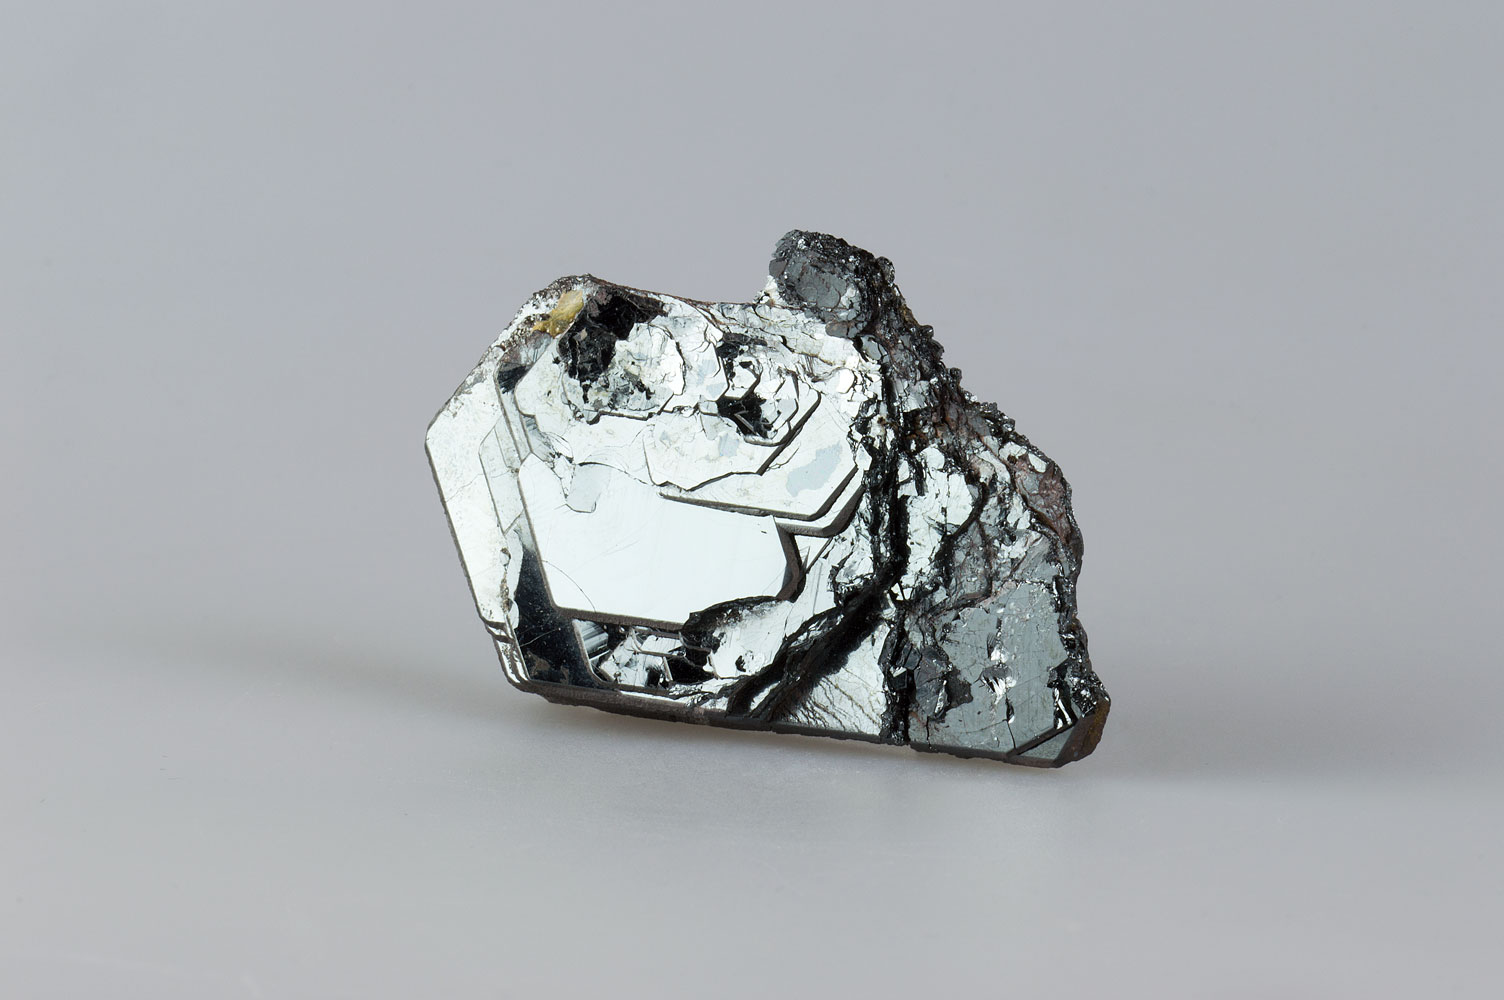 Iron Oxide Hematite type - Fe2O3